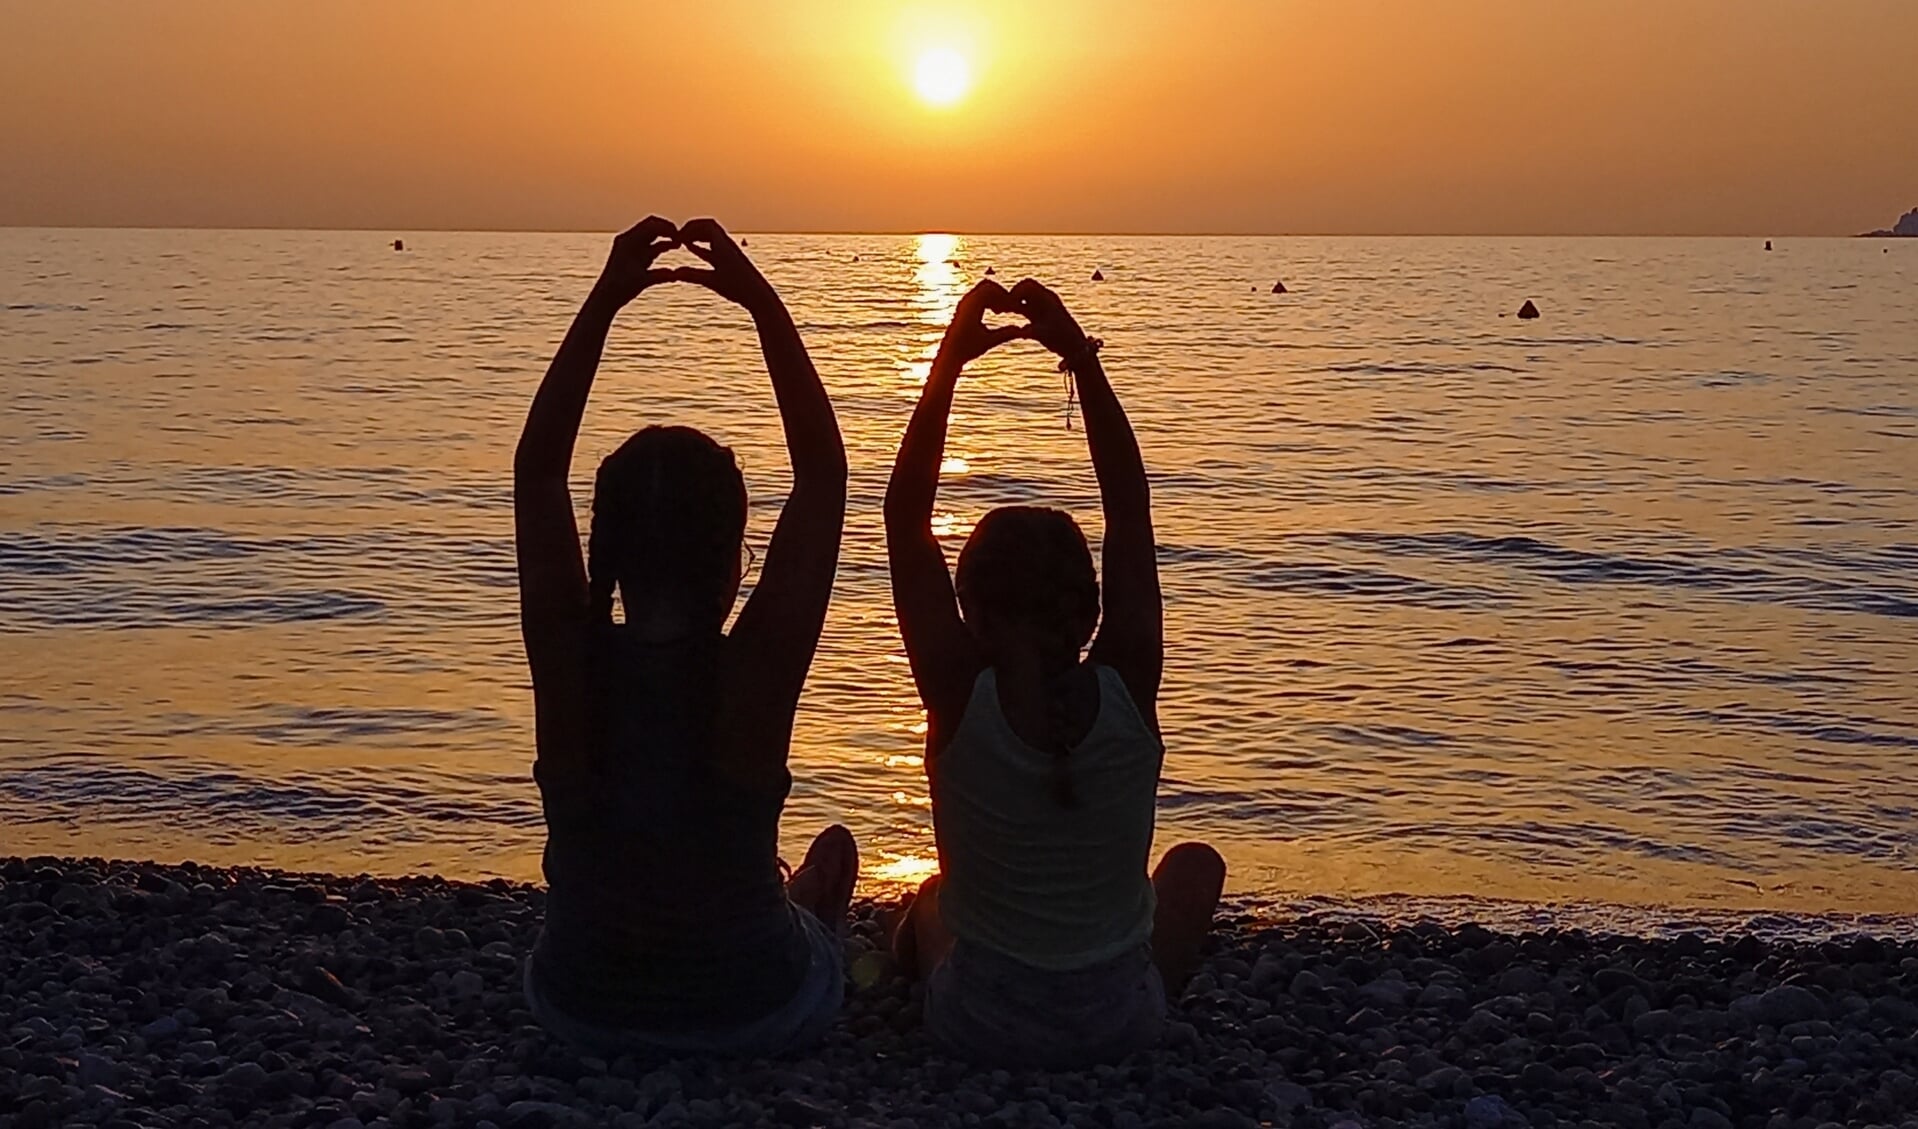 Onze 2 dochters die allebei een hartje maken met hun handen bij een zonsondergang aan het strand op het mooie eiland Corsica. 